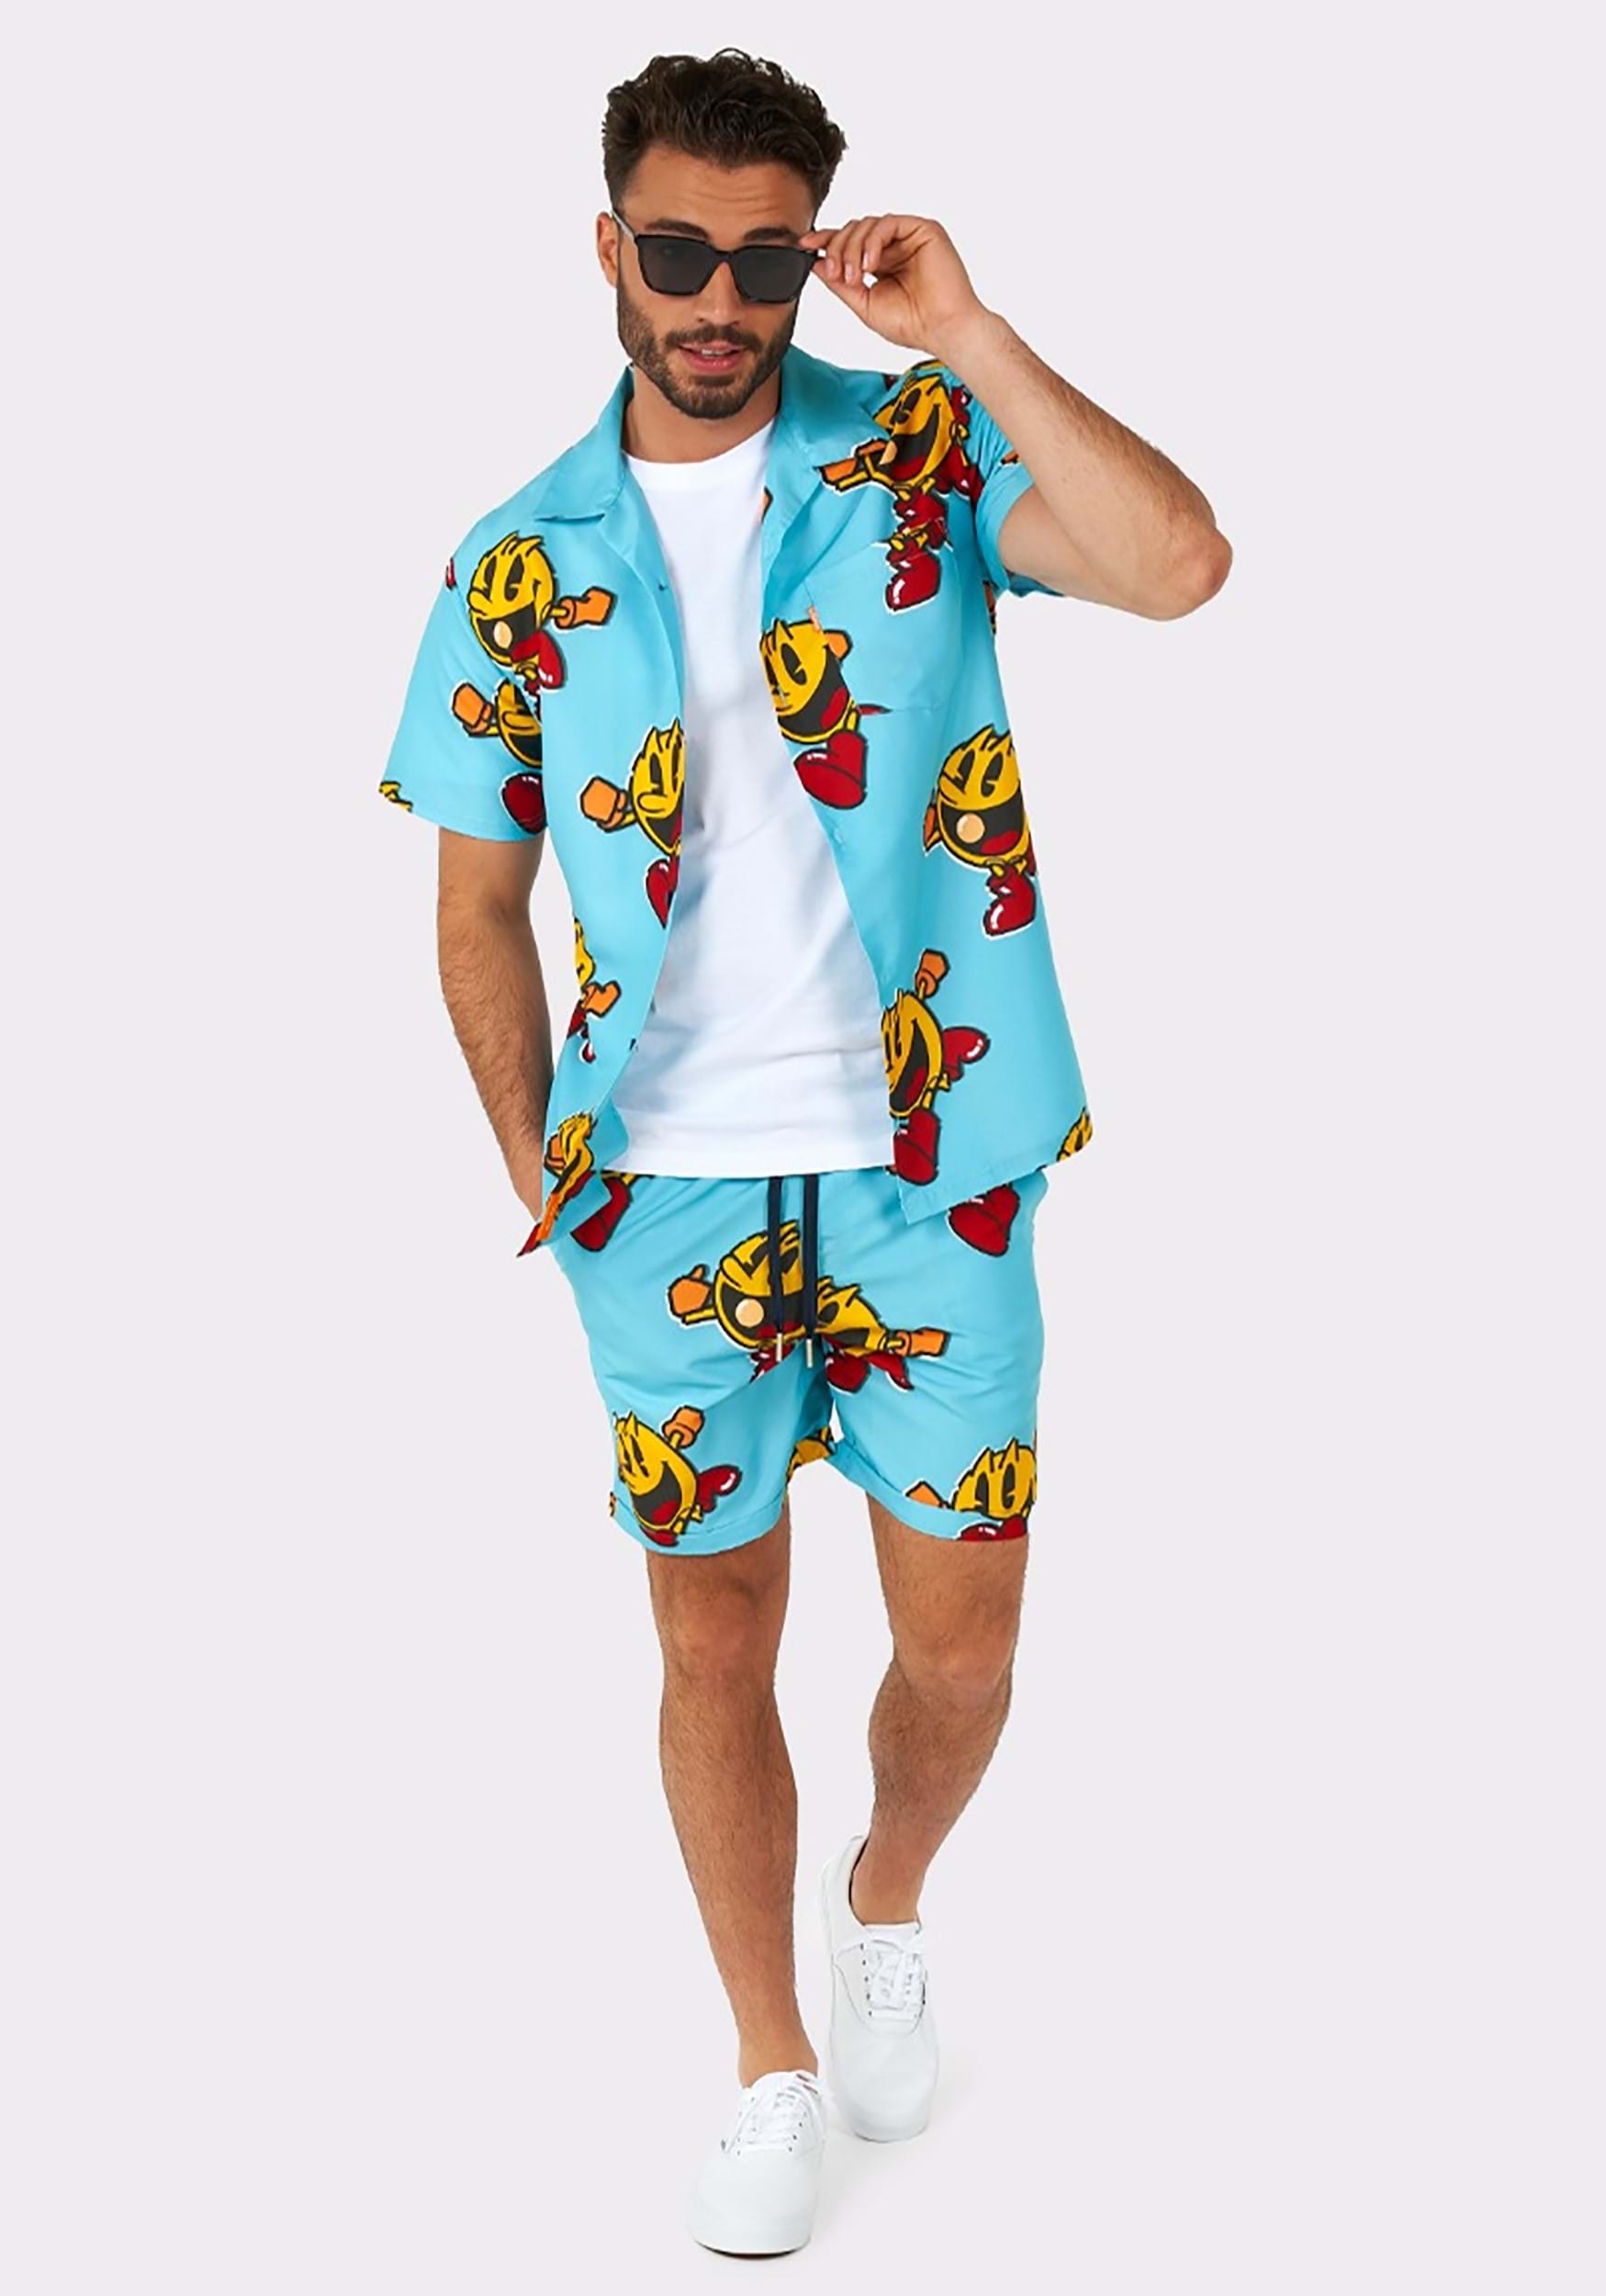 Pac-man Waka Waka traje de baño y camisa para hombres Multicolor Colombia